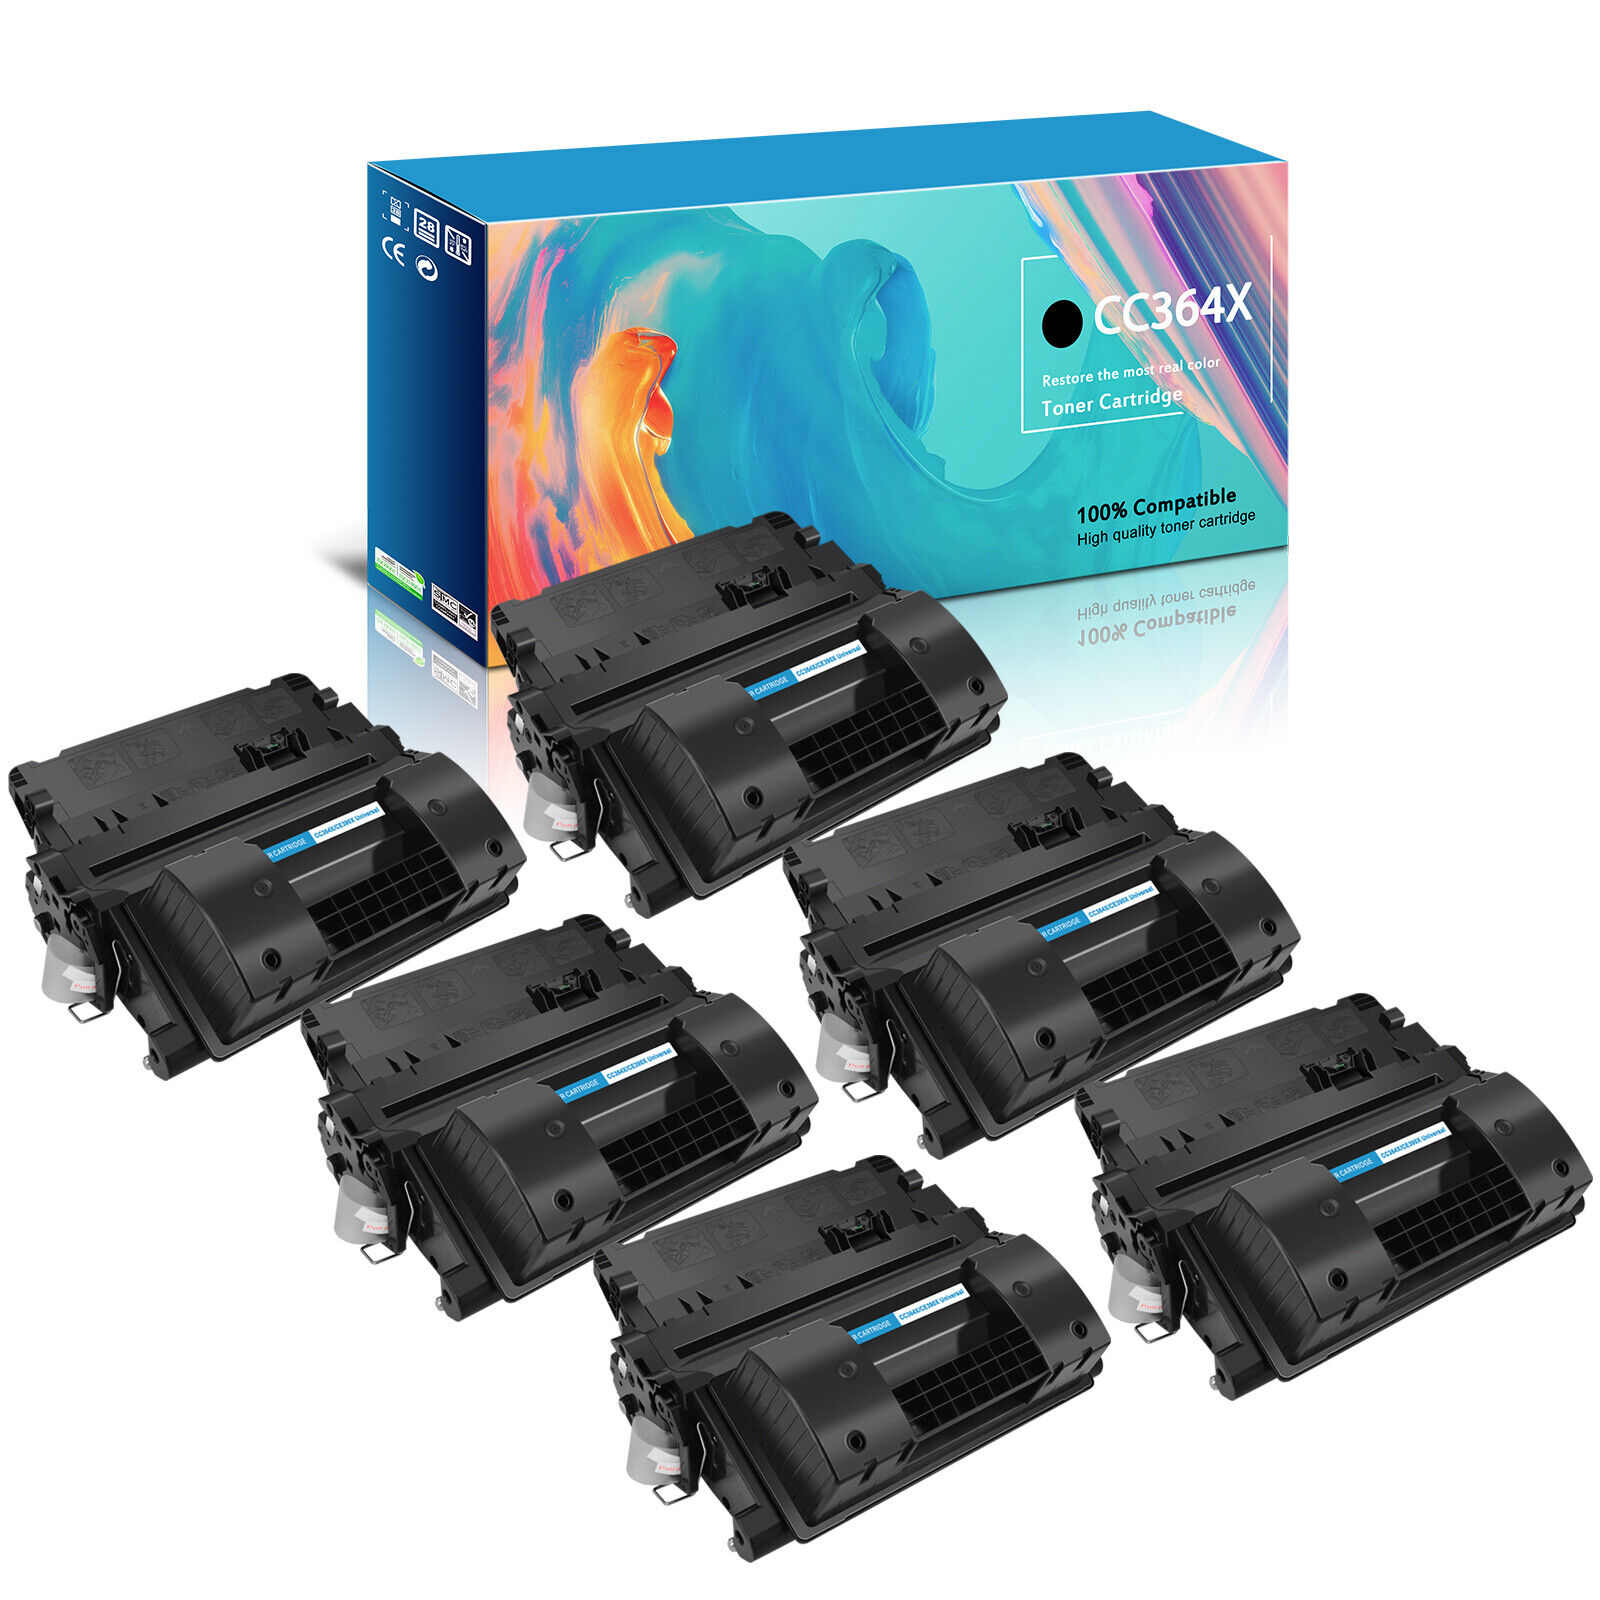 6PK Black Toner for HP CC364X 64X LaserJet P4015n P4015tn P4015x P4015dn Printer